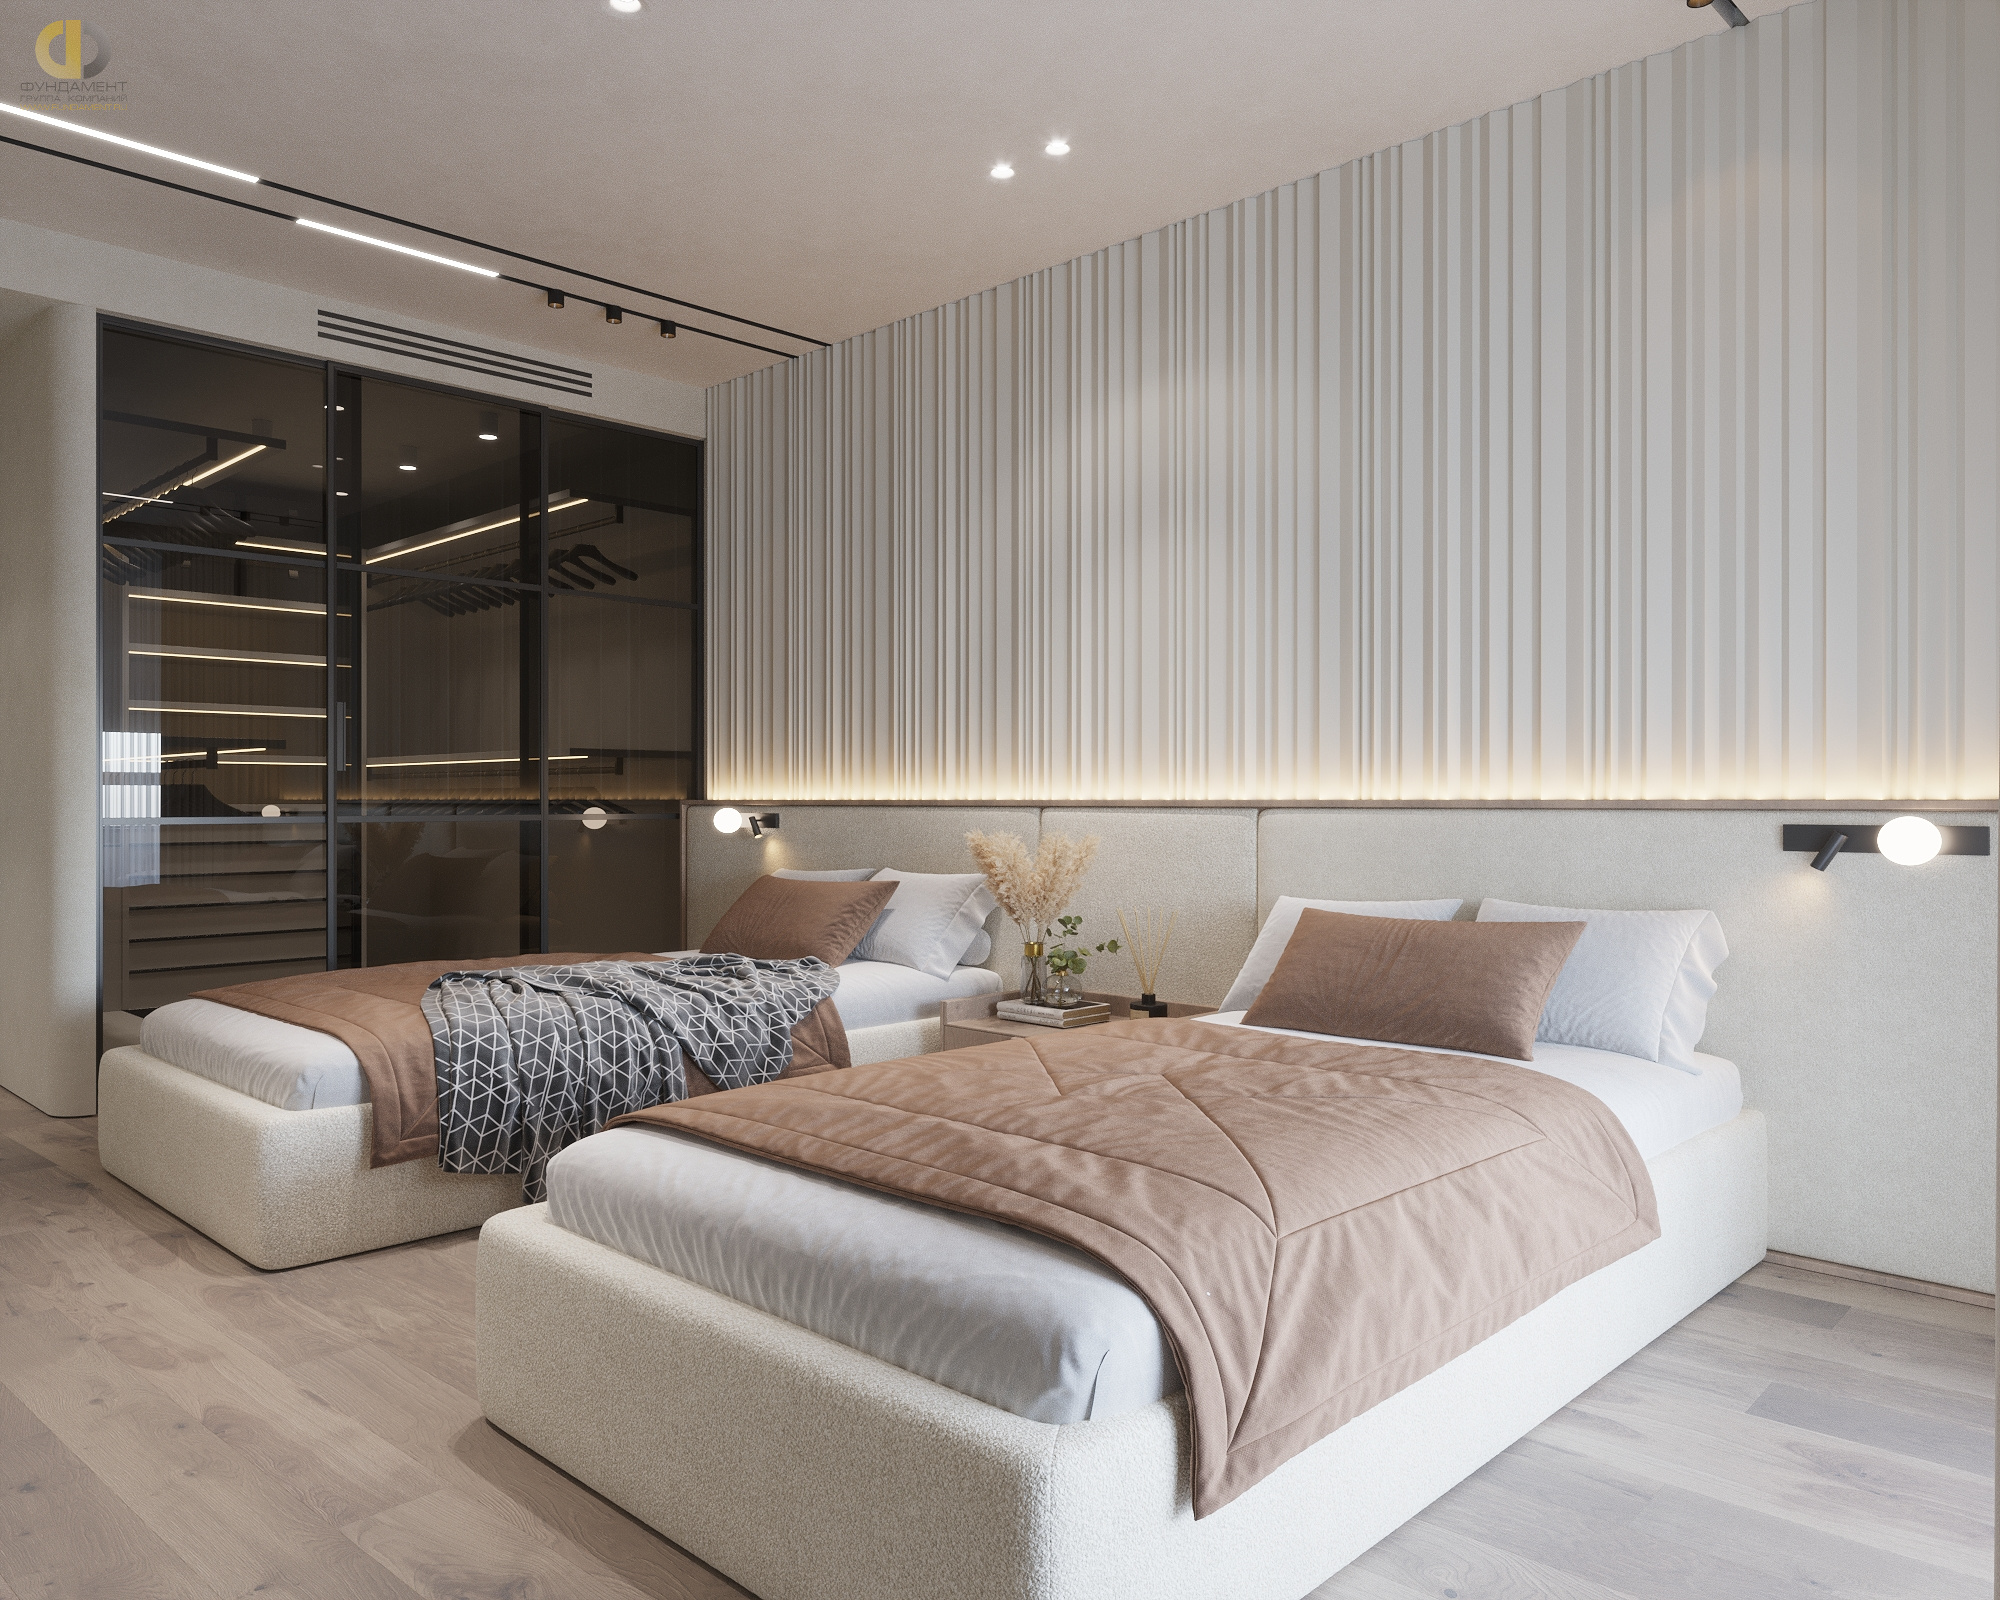 Дизайн интерьера спальни в Москве - цены и фото дизайн-проектов спальни